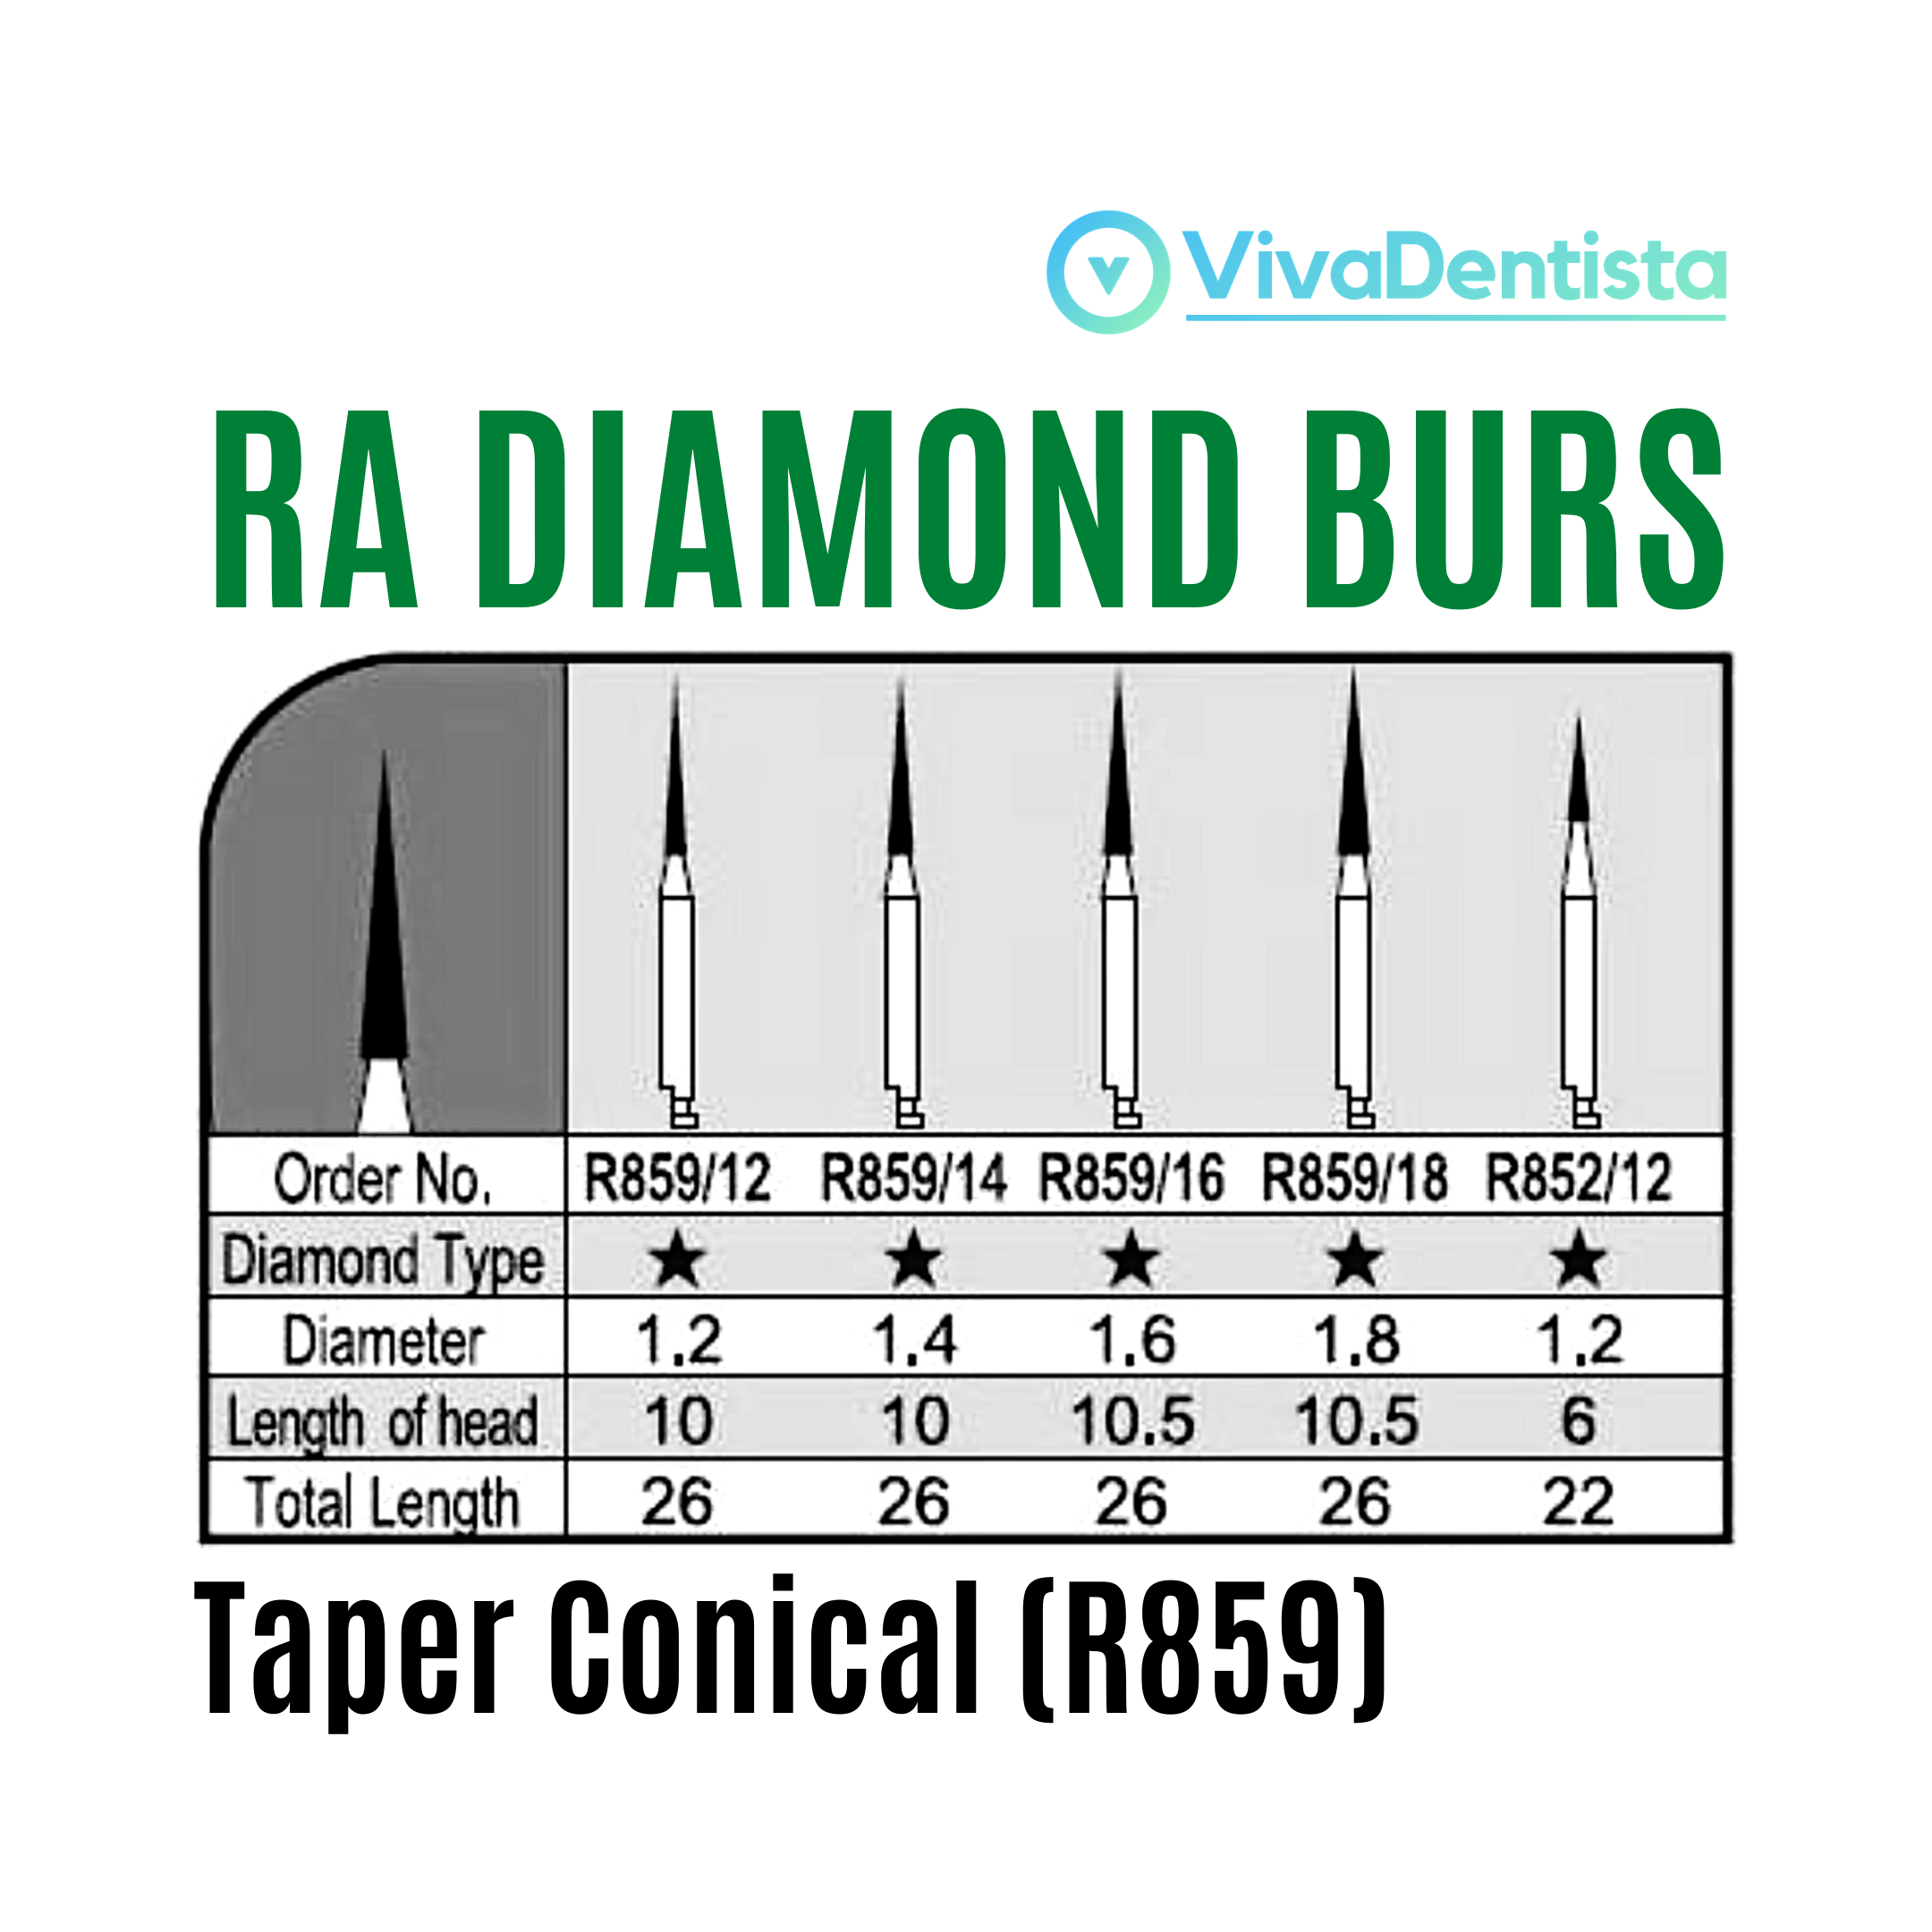 RA Diamond Burs (Taper Conical) - 5pcs